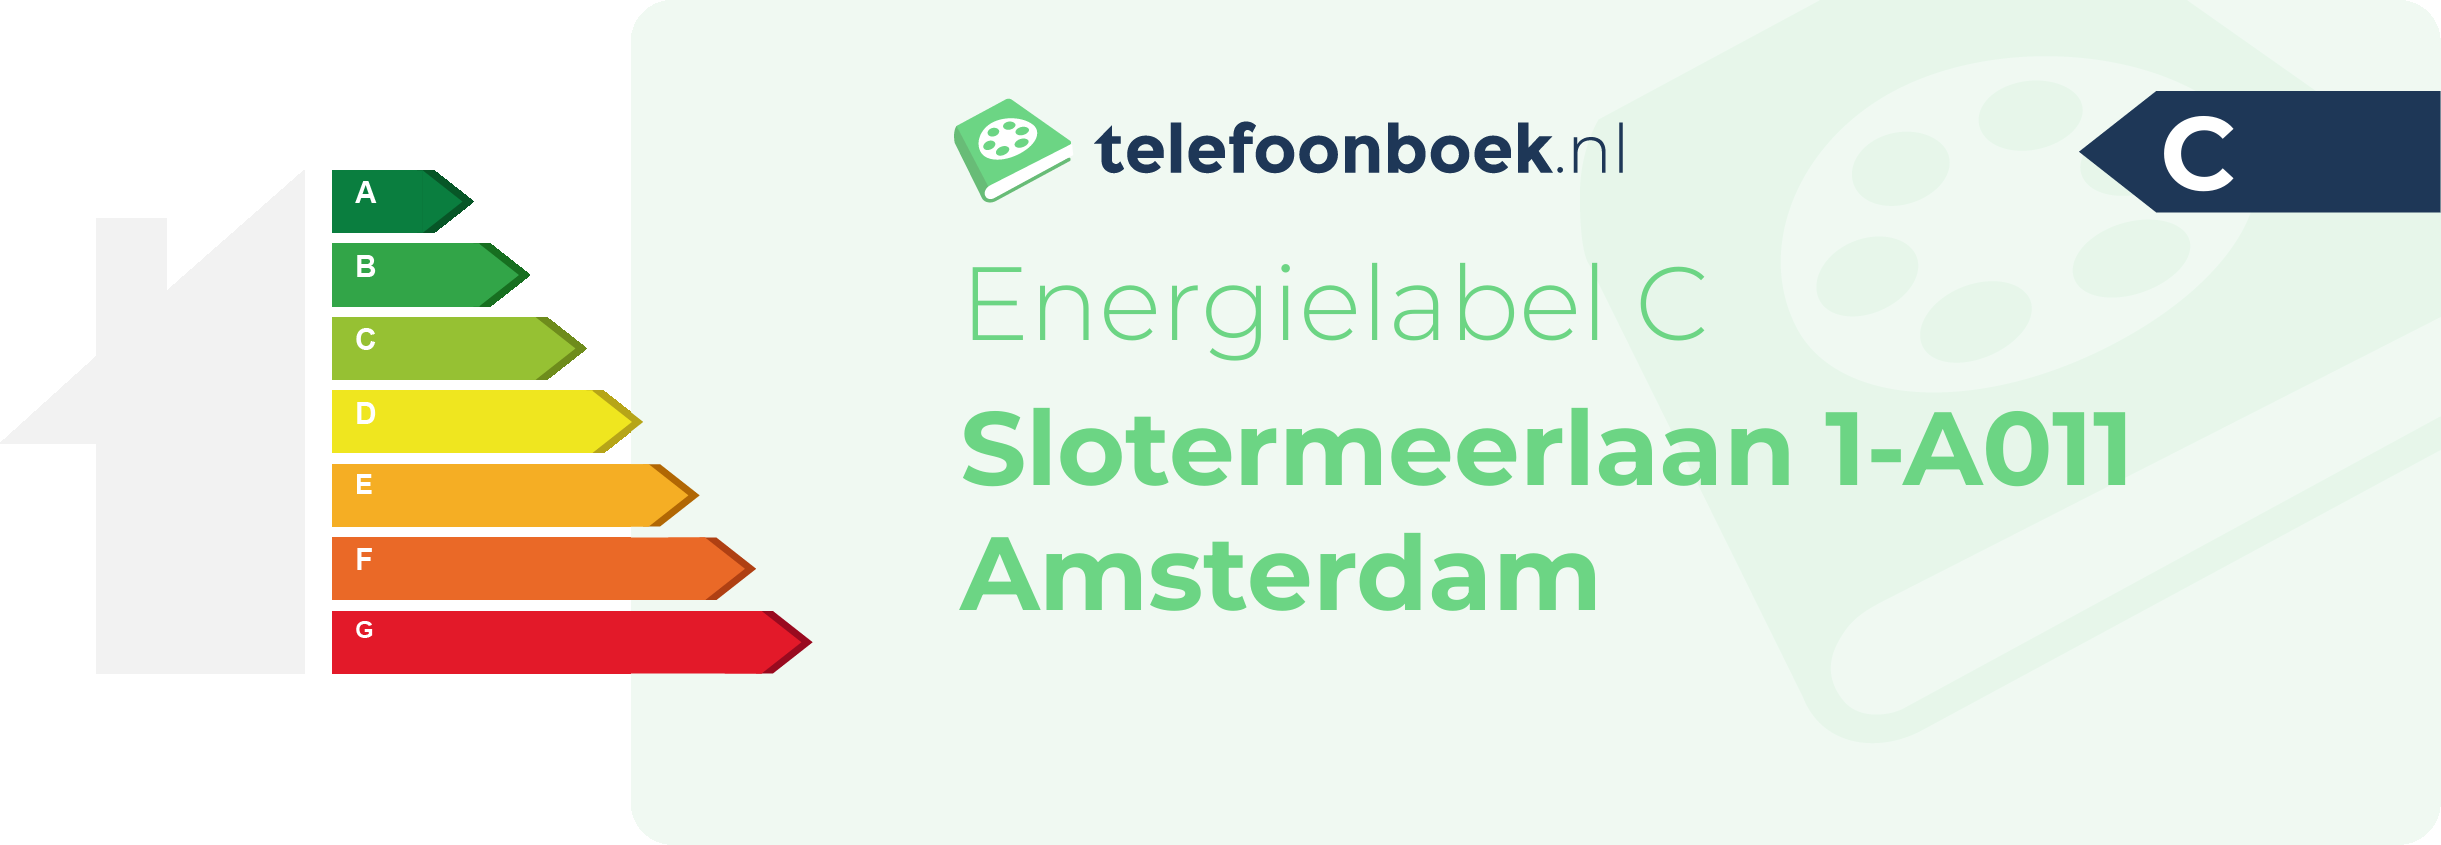 Energielabel Slotermeerlaan 1-A011 Amsterdam